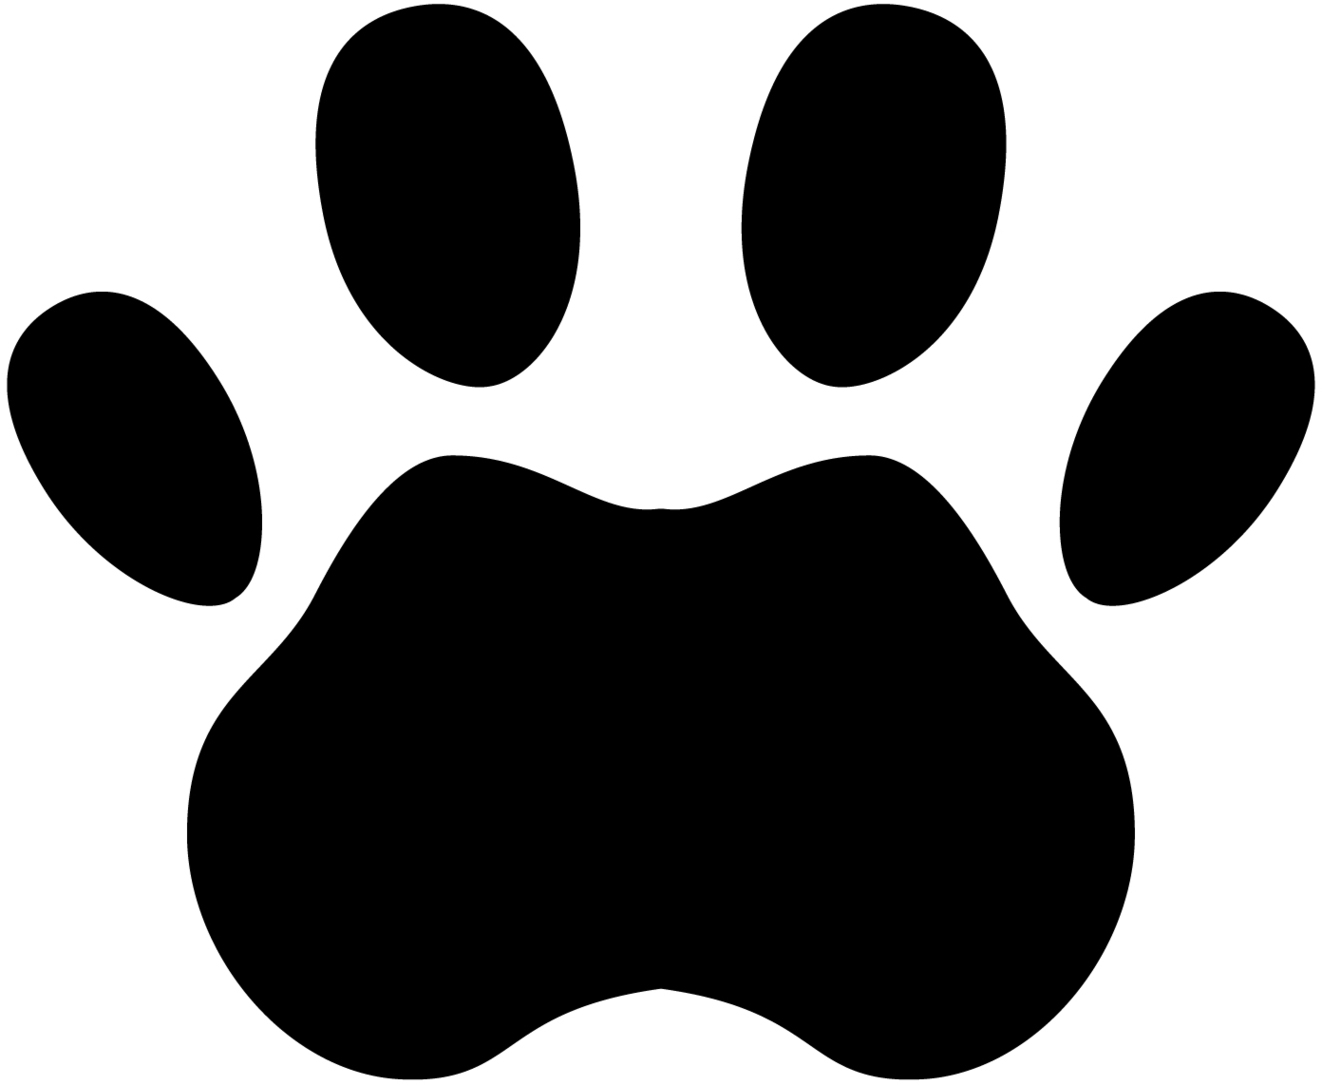 Dog paw prints paw prints dog paw print clip art free download 3